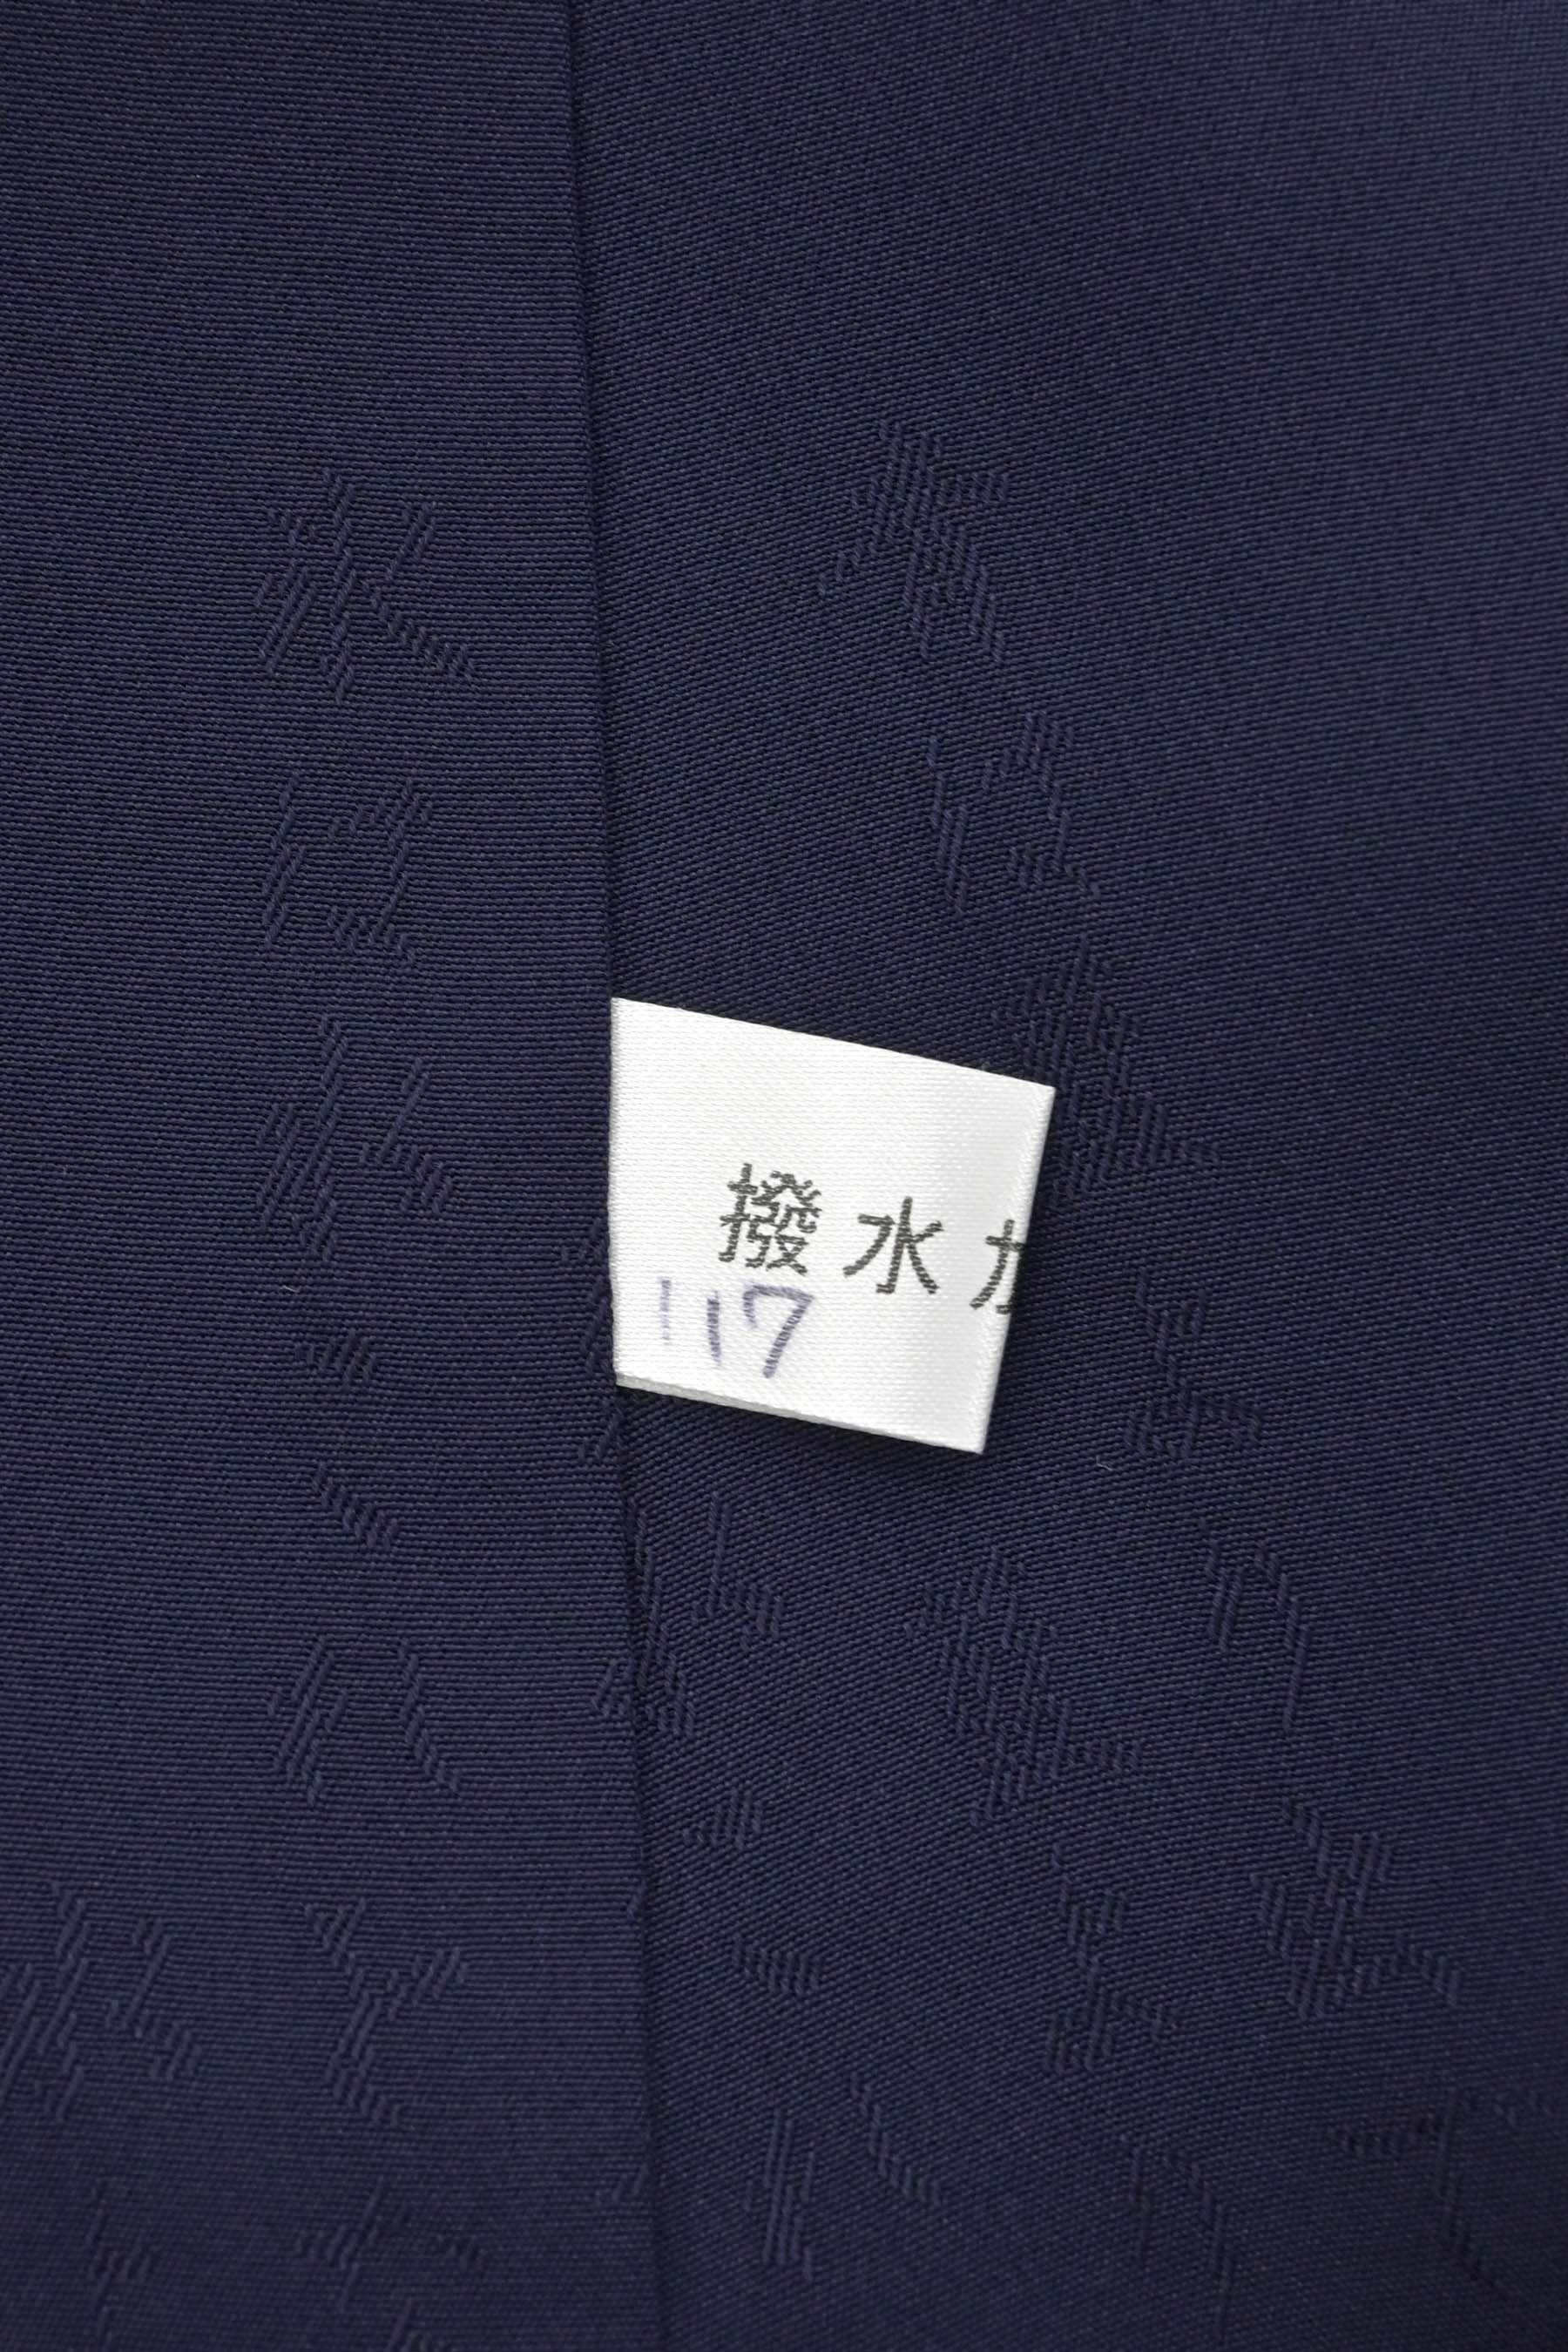 1559.無形文化財保持者 佐藤昭人 天然阿波藍灰汁発酵建本藍 小紋 藍染 